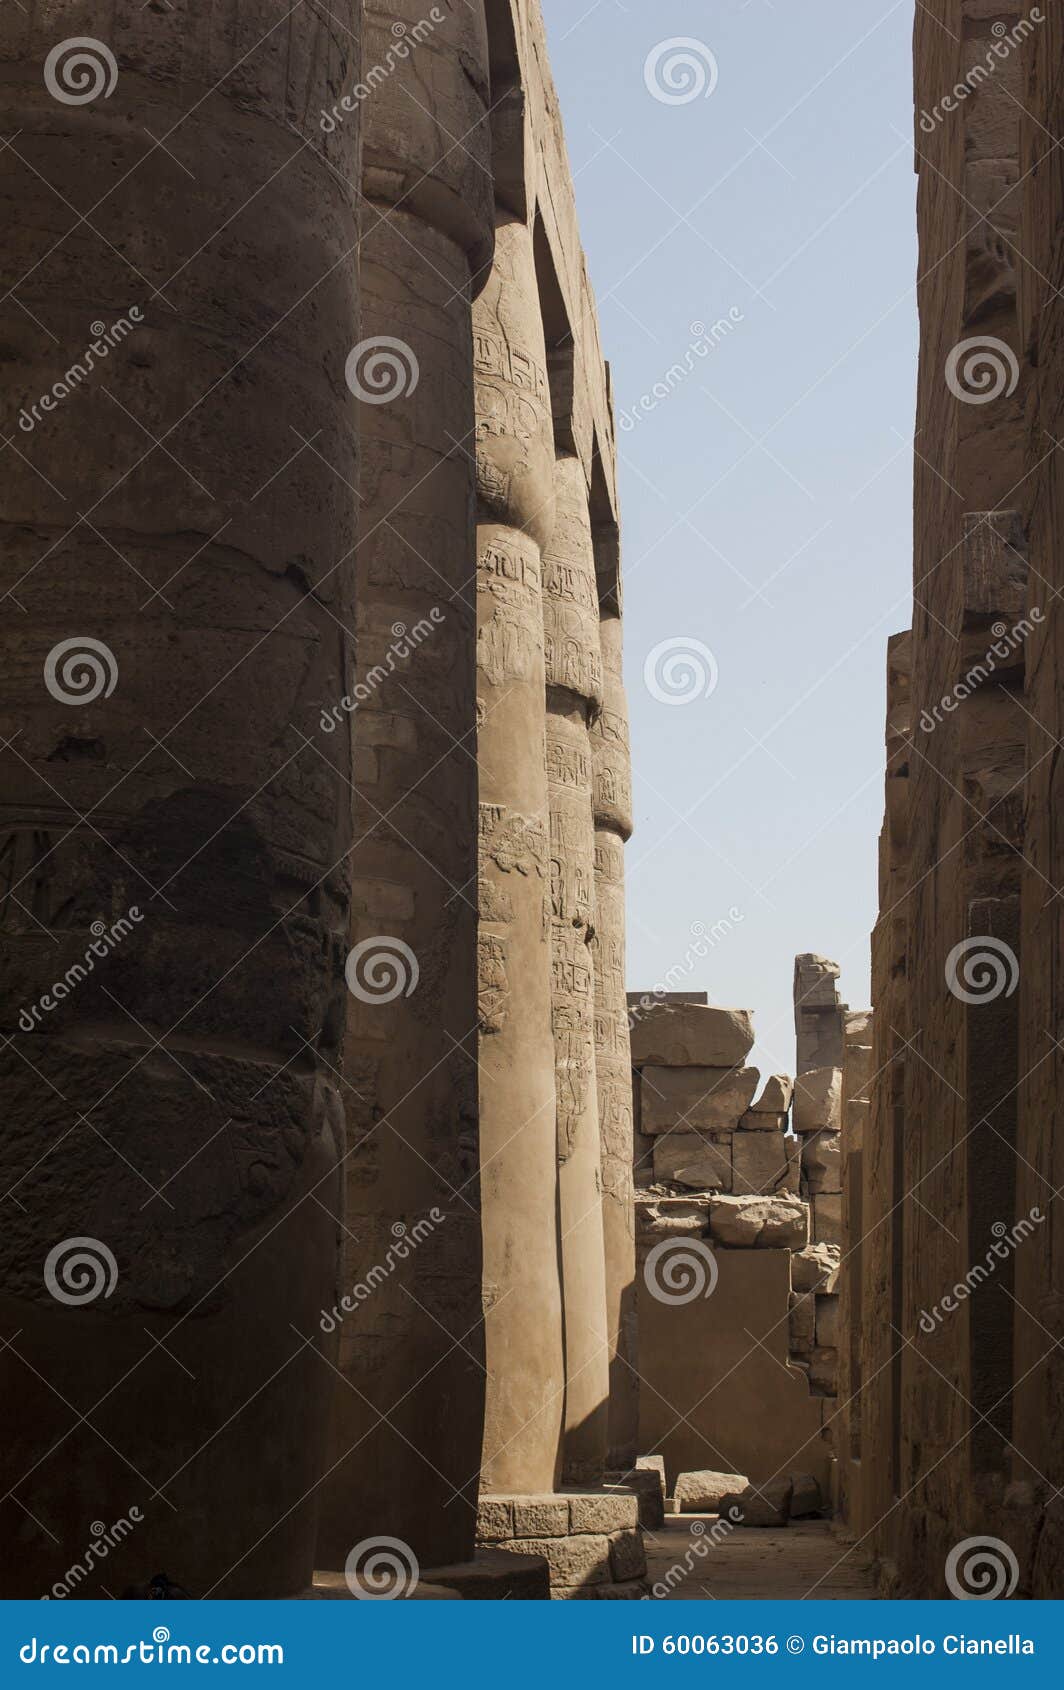 karnak temple. luxor, egypt